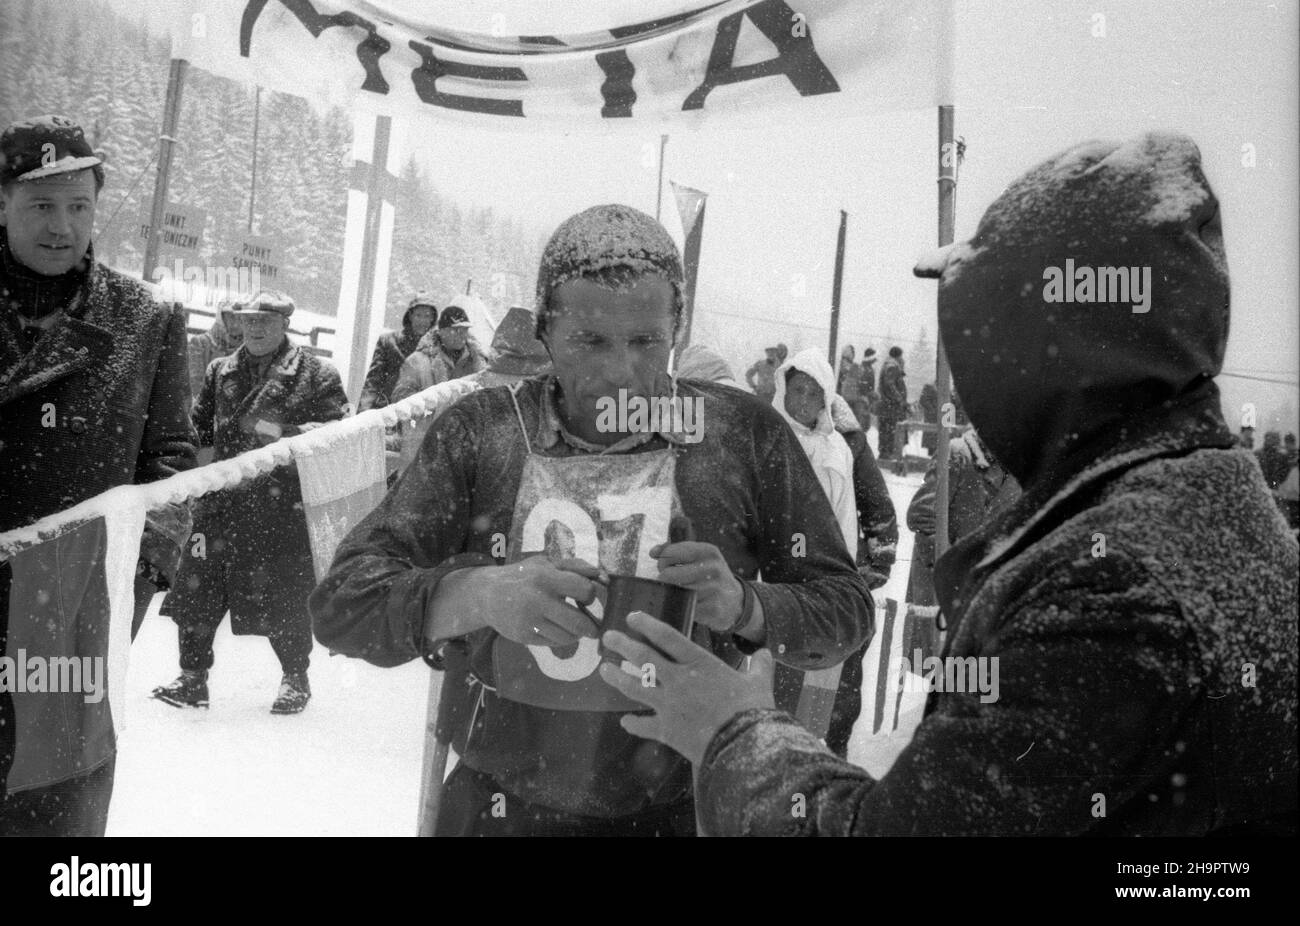 Zakopane, 1949-03-03. Miêdzynarodowe Zawody Narciarskie o Puchar Tatr (23 II-3 III). Meta biegu na 30 km na stadionie pod Krokwi¹. Nz. Frantisek Balvin z Czechos³owacji, zdobywca IV miejsca. ka  PAP      Zakopane, March 3, 1949. The International Skiing Tournement for the Tatra Mountains Cup (February 23 -March 3). The finishing line of the 30-kilometre cross country at the sport stadium under Krokiew. Pictured: Frantisek Balvin from Czechoslovakia, the winner of the 4th place.   ka  PAP Stock Photo